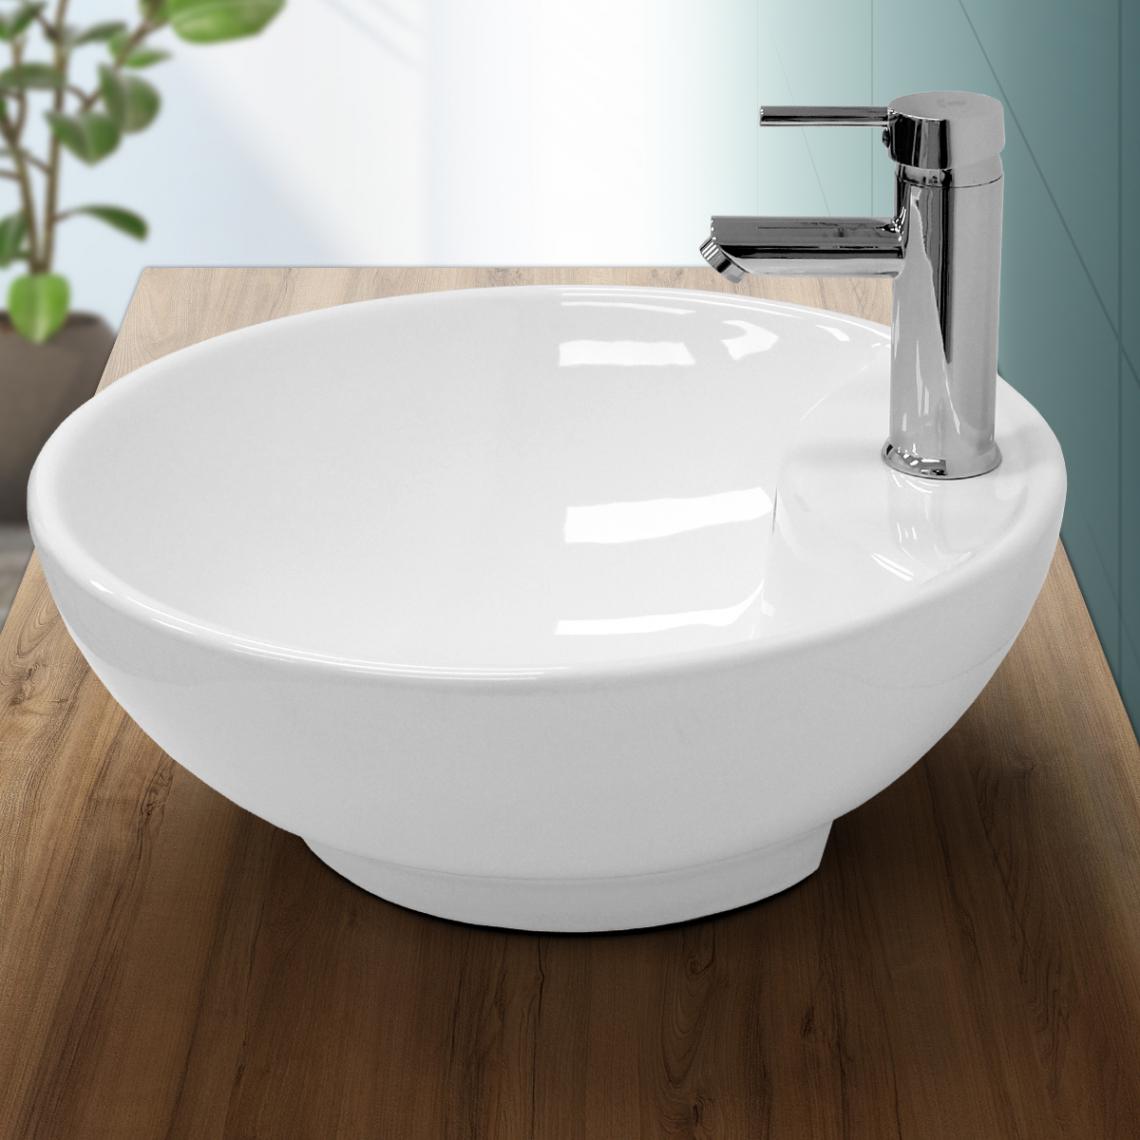 Ecd Germany - Évier céramique vasque rond a poser moderne lave-mains salle de bain Ø 455 mm - Lavabo